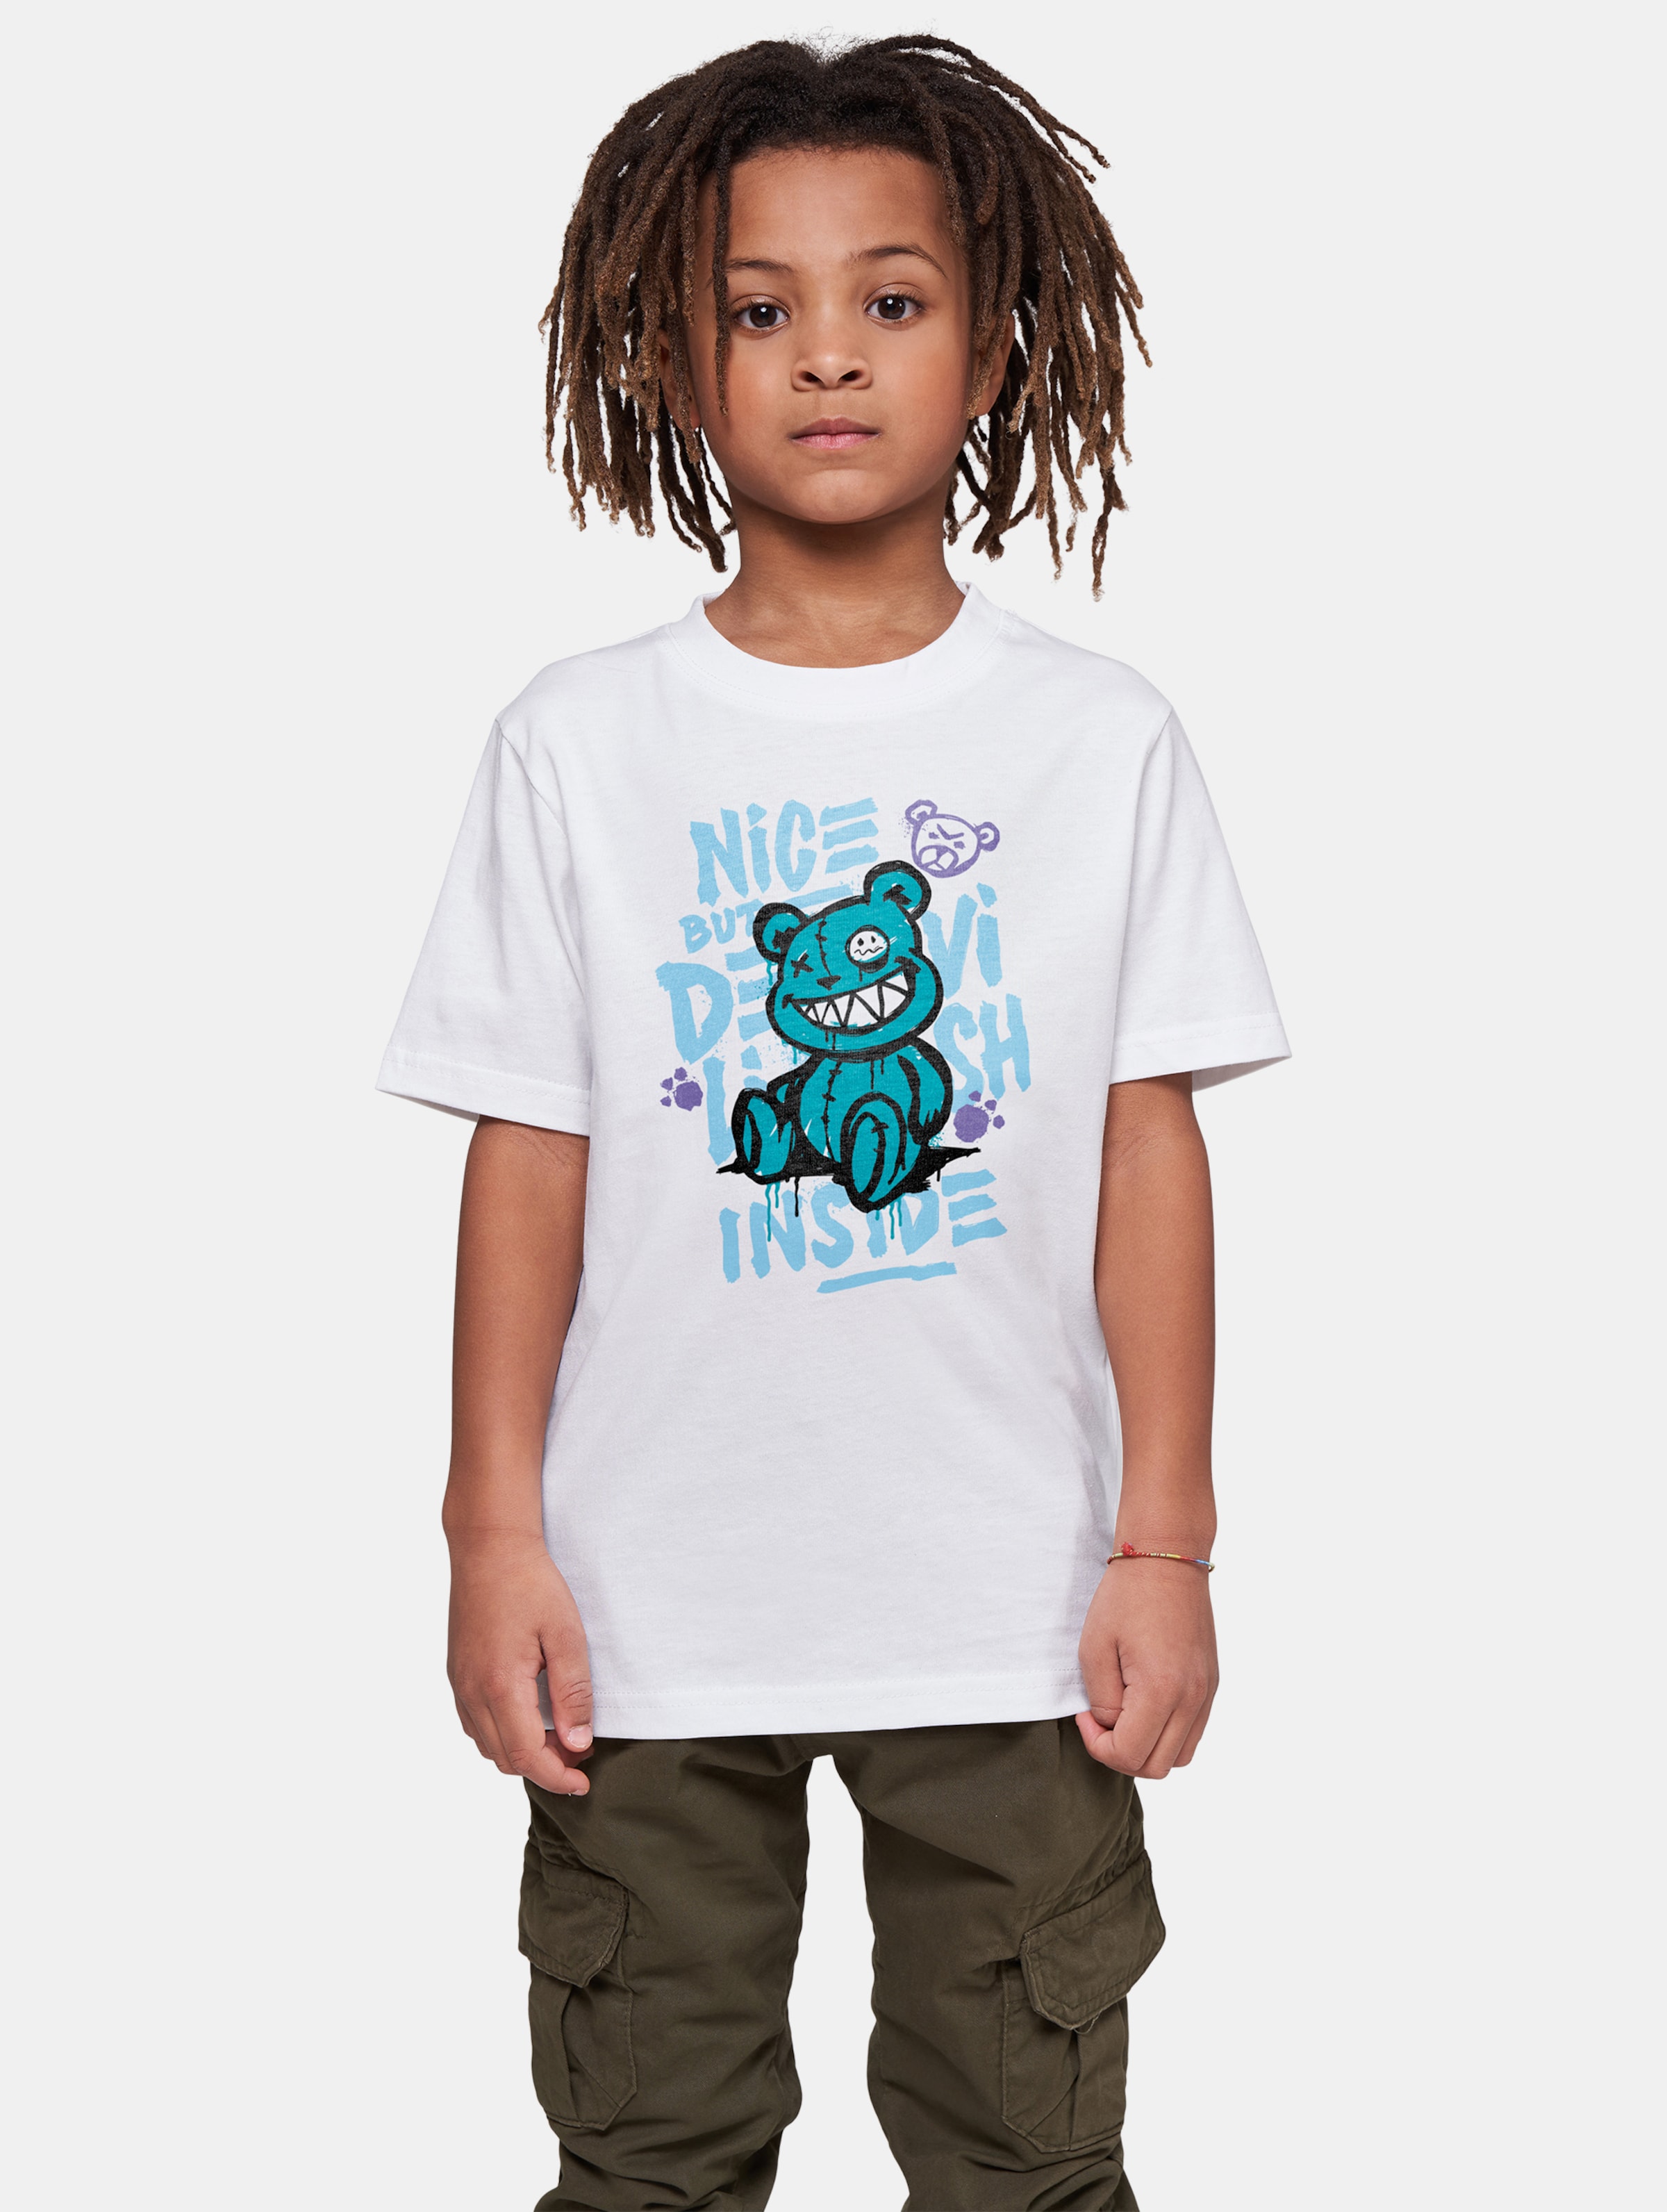 Mister Tee - Nice But Devilish Kinder T-shirt - Kids 146/152 - Wit